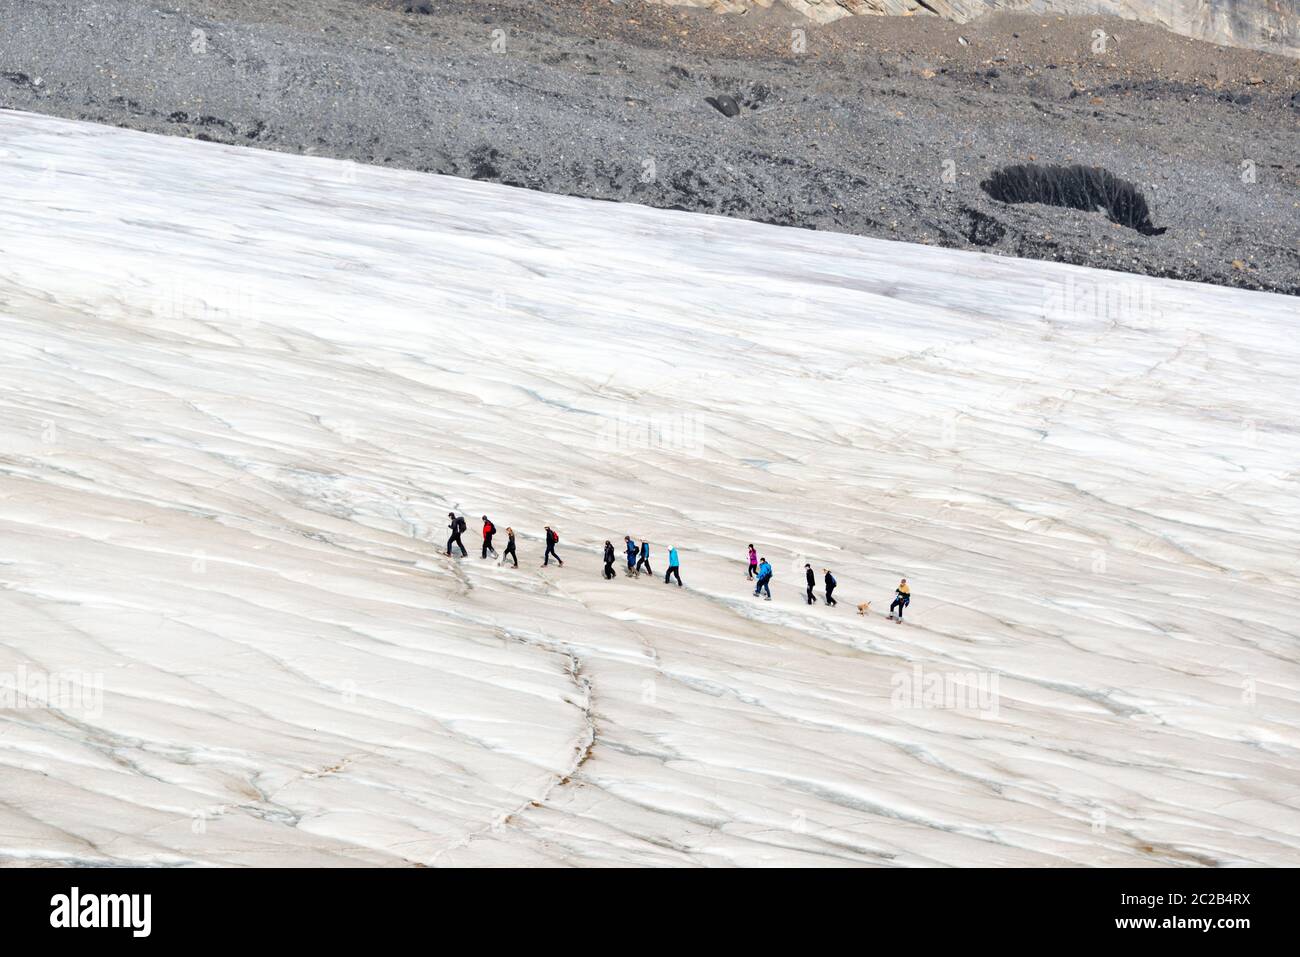 Ligne de touristes marchant sur le glacier Athabasca, dans le champ de glace de Columbia, dans le parc national Jasper, dans les montagnes Rocheuses, en Alberta, au Canada Banque D'Images